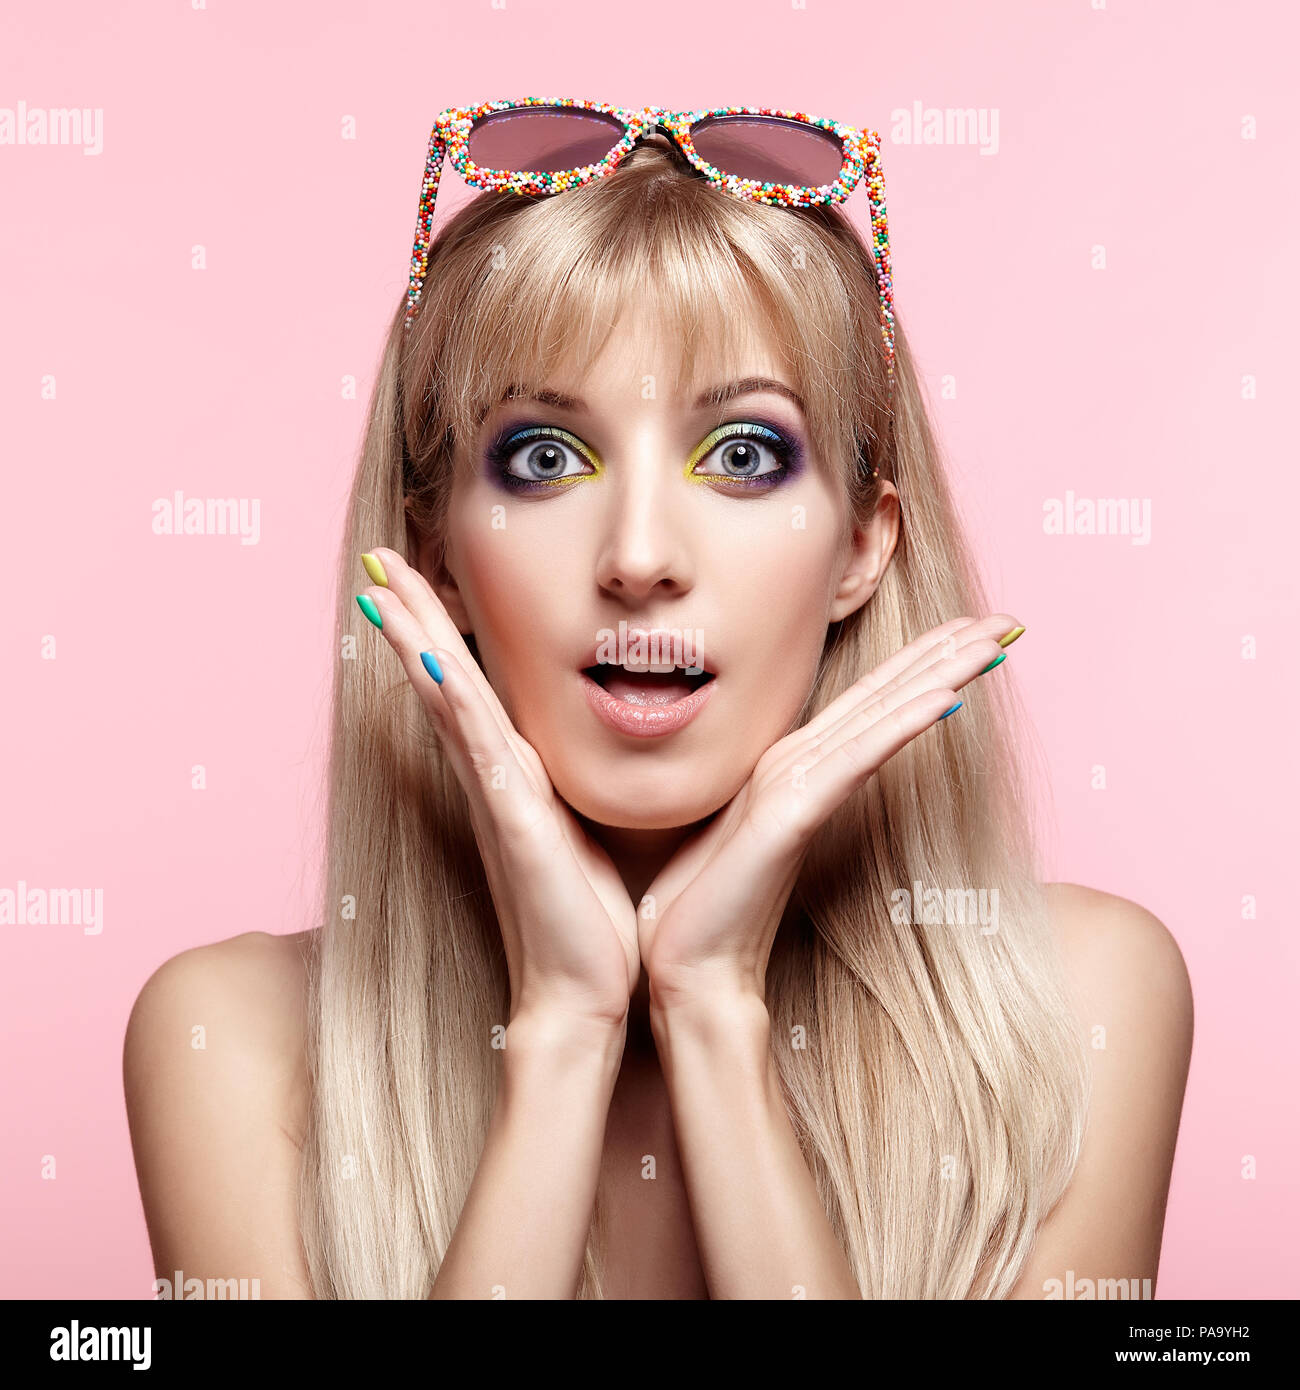 Junge blonde Frau mit Spaß Süßigkeiten Brille auf die Stirn. Porträt von Frauen in lila Kleid mit blauen und gelben Augen Make-up. Stockfoto